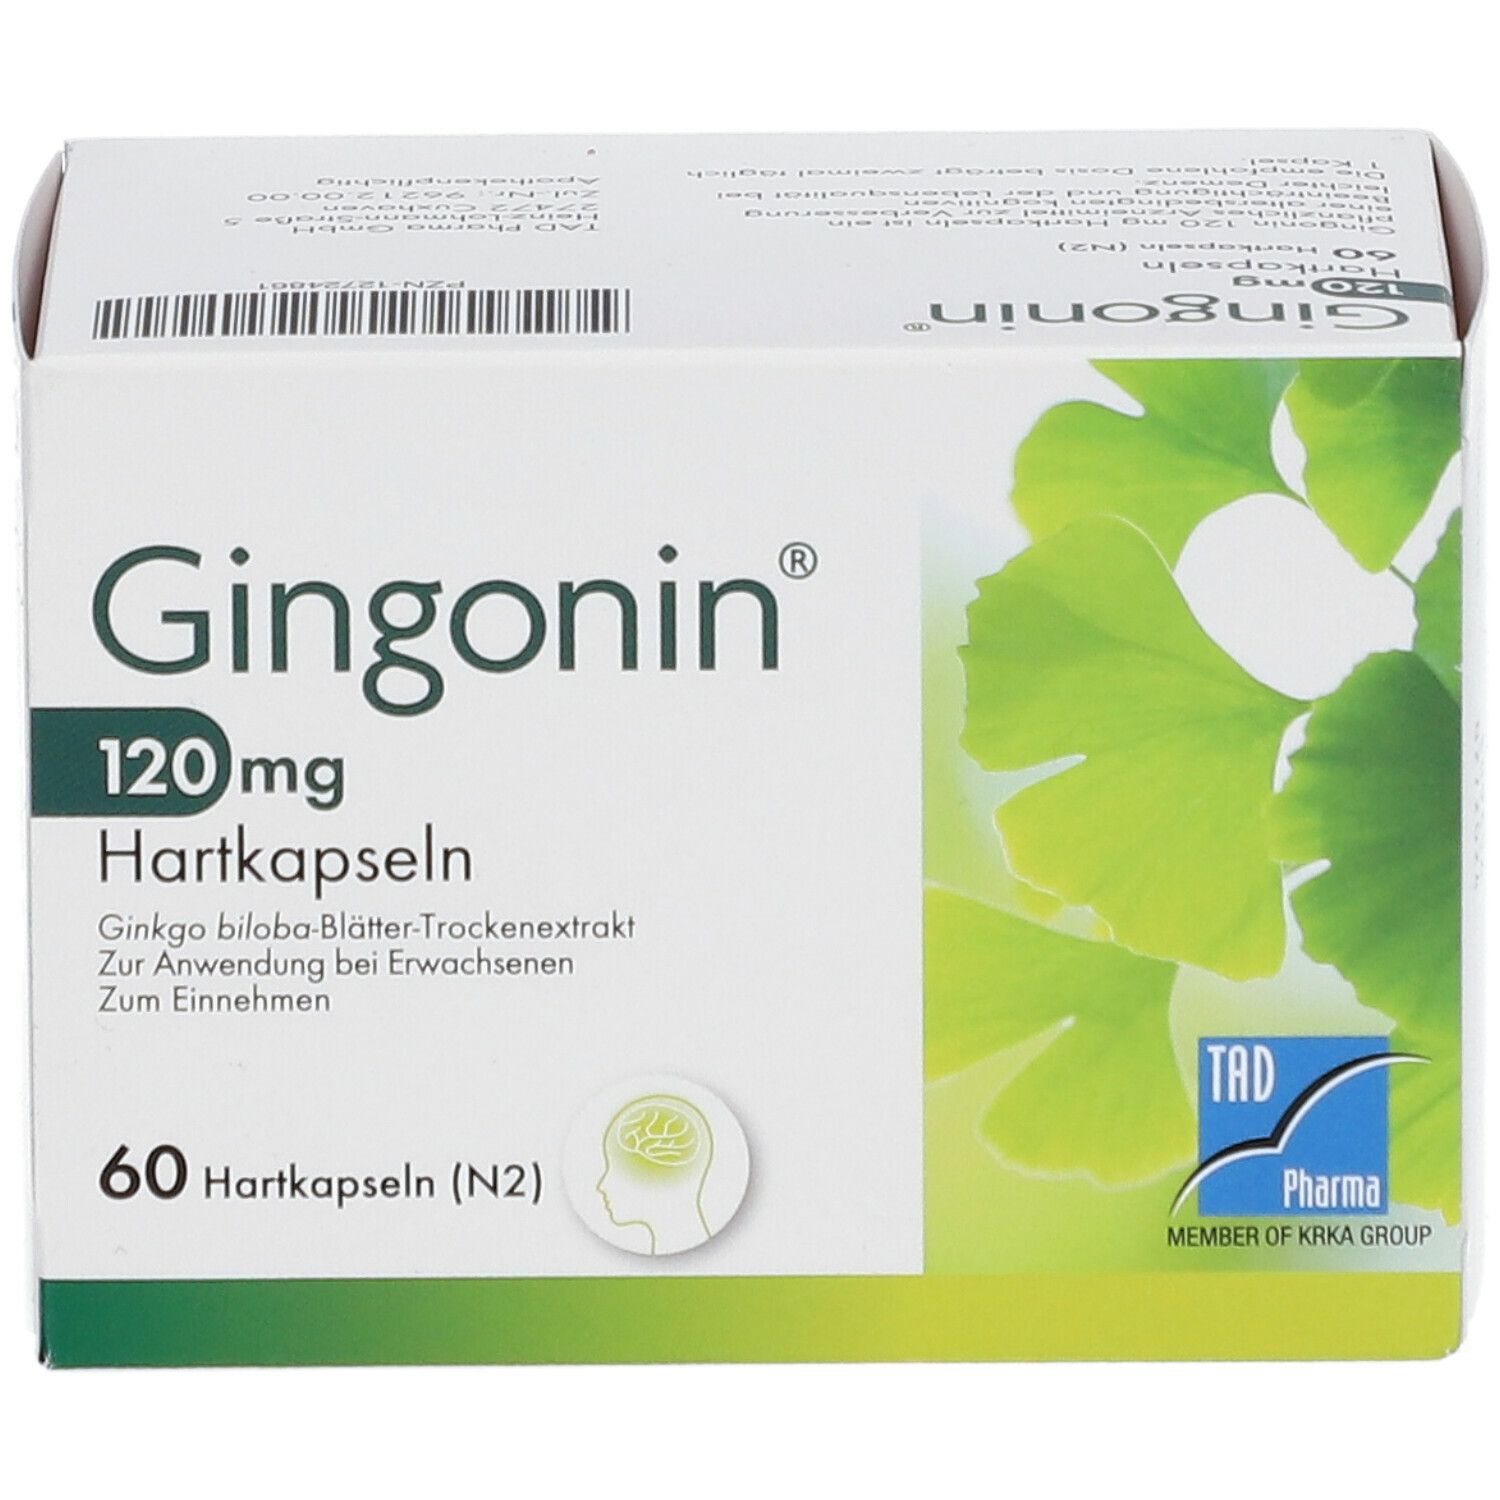 Gingonin 120 mg